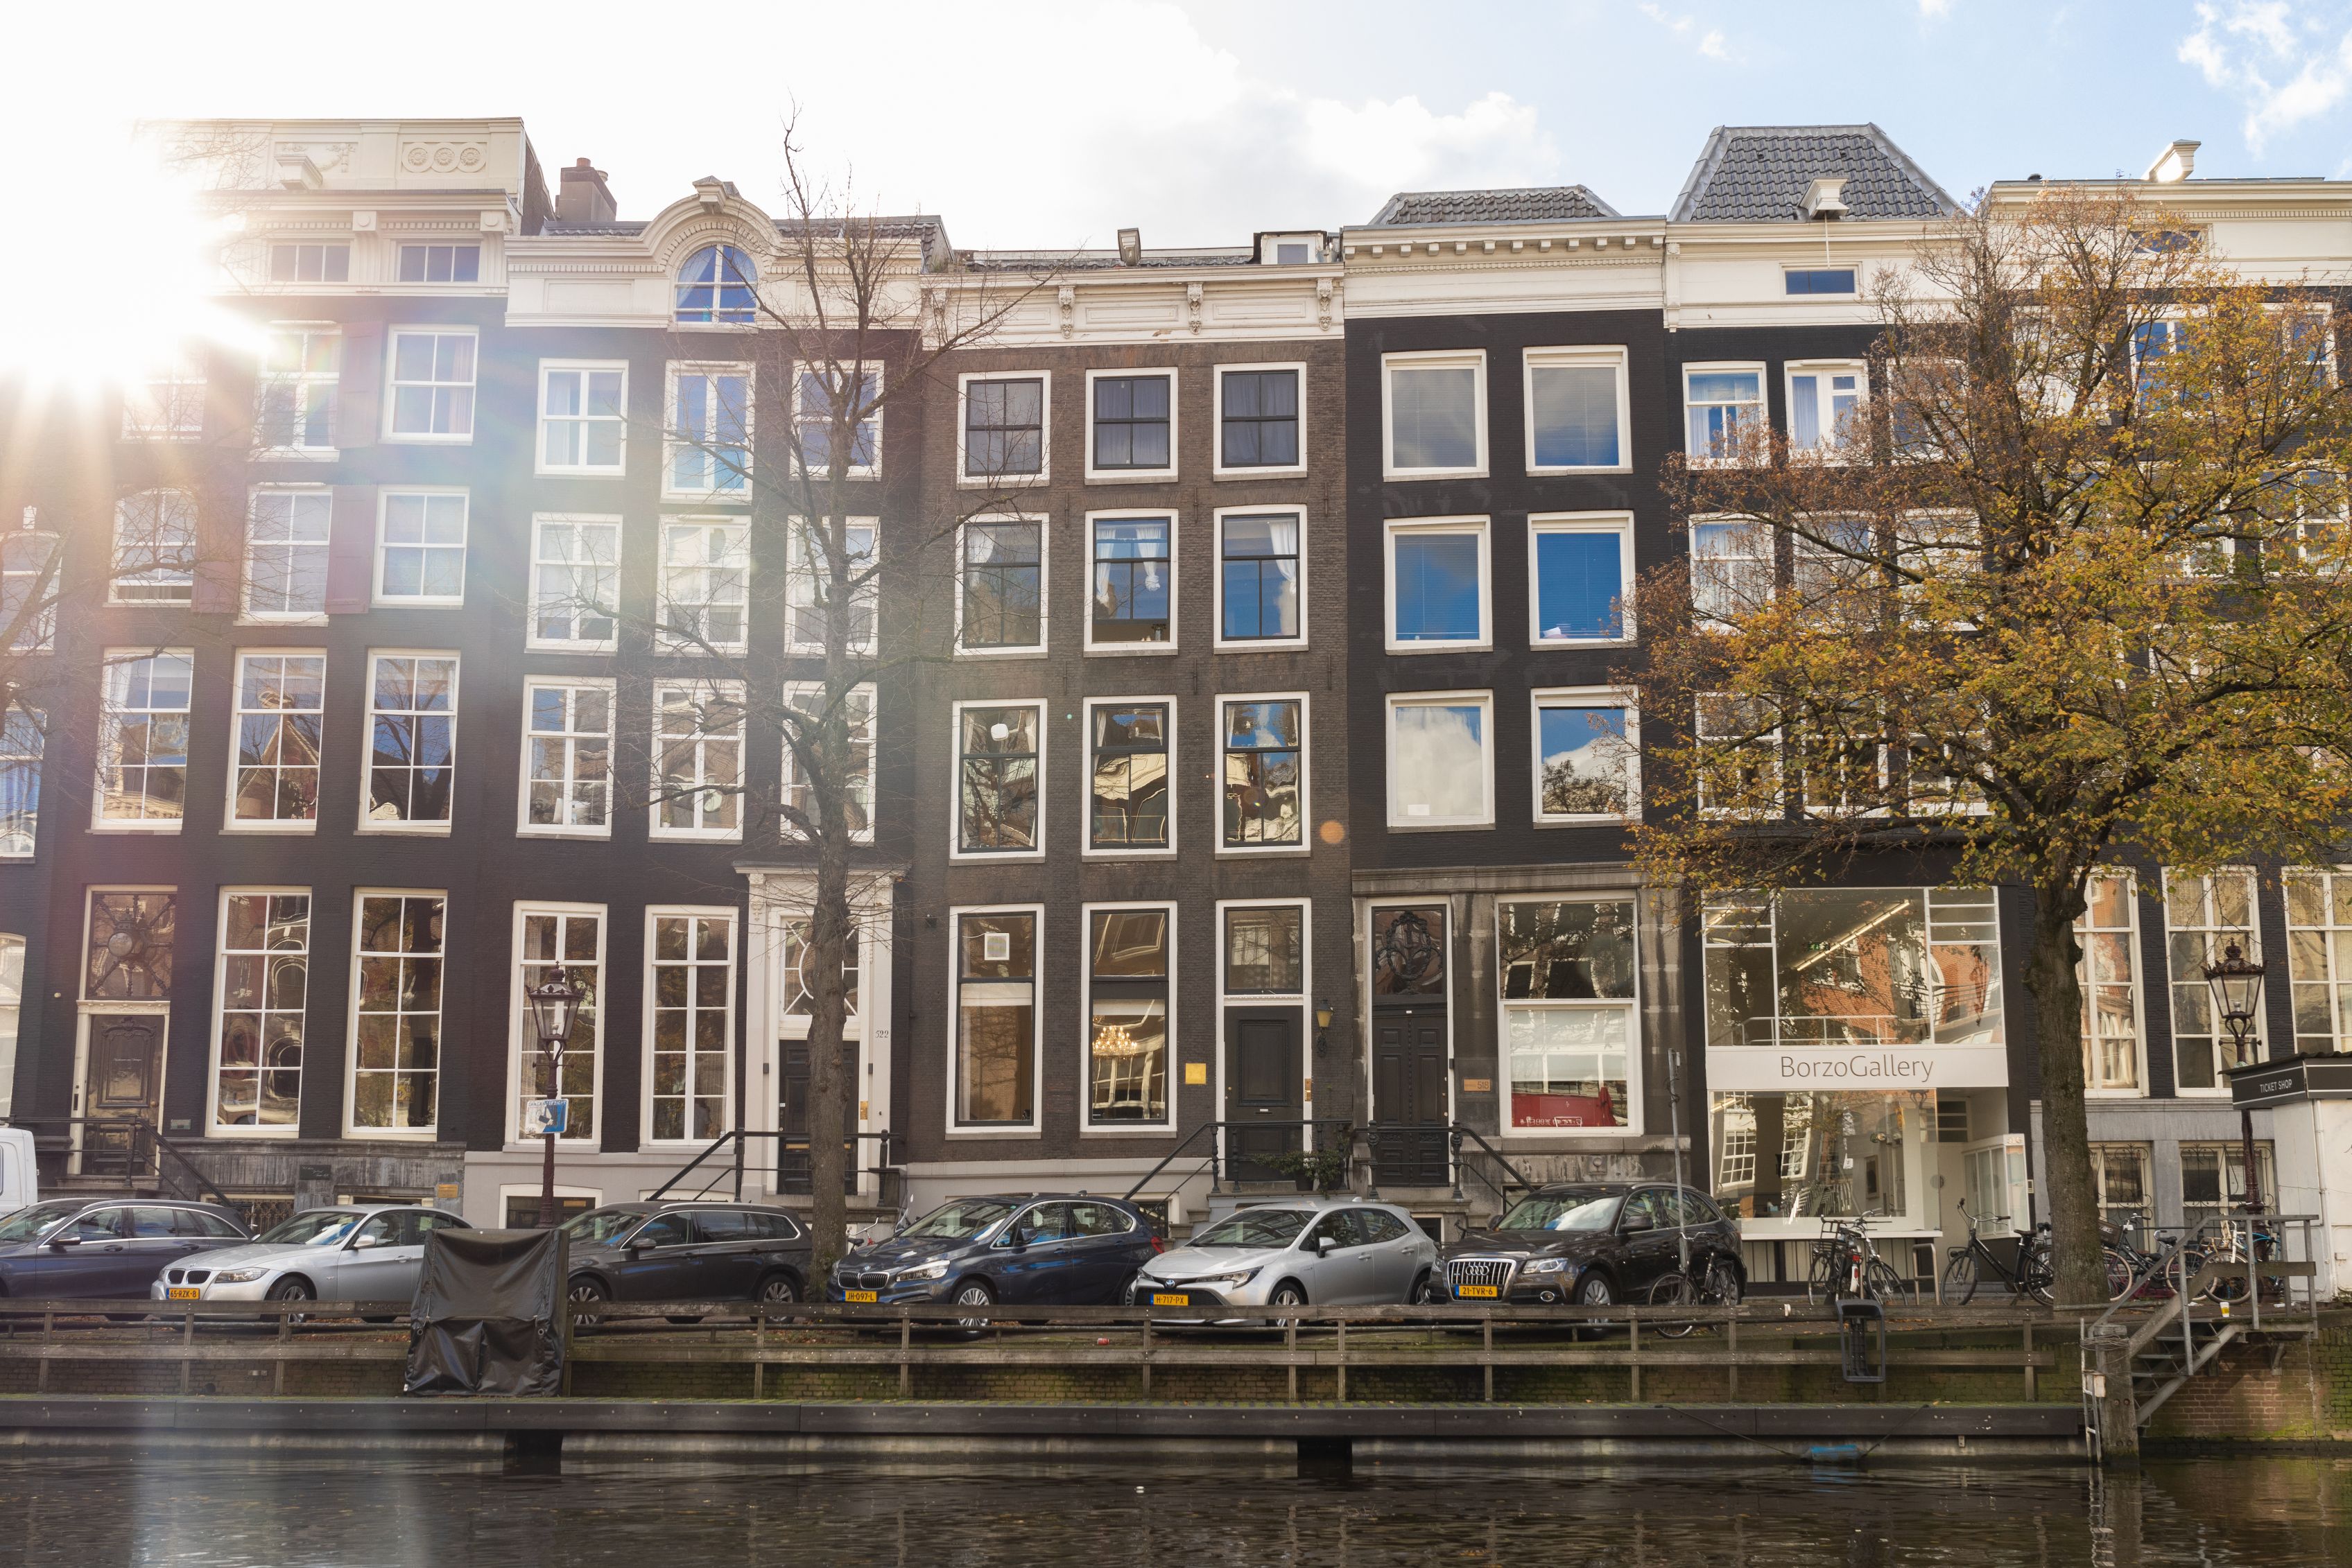 Virtual Office in Amsterdam - Amsterdam Desk Company